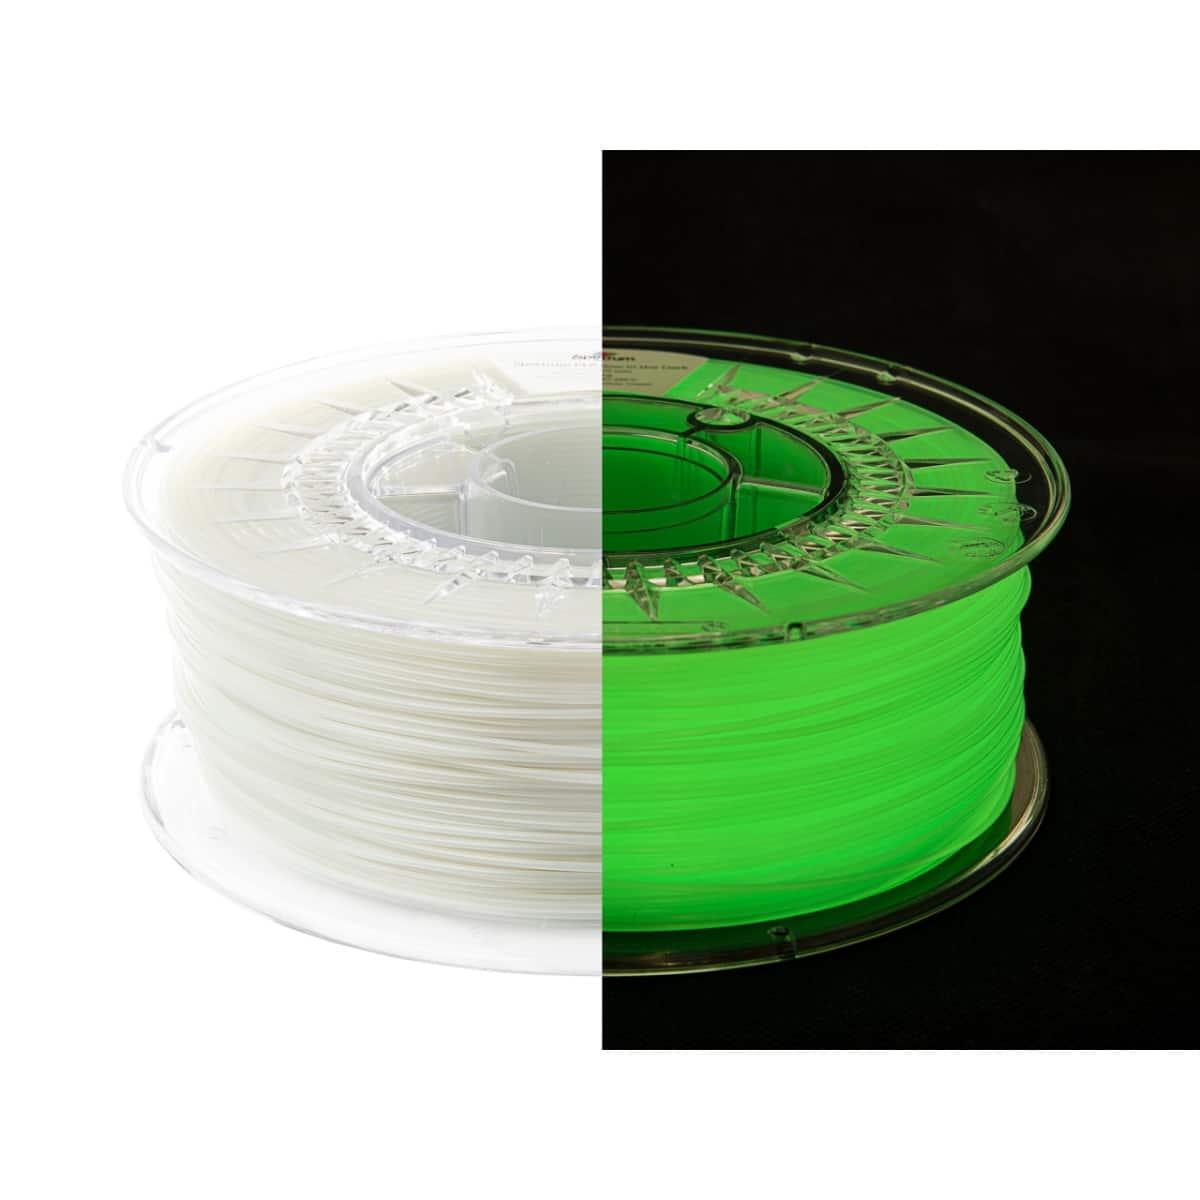 Køb Spectrum Filaments - PLA Glow In The Dark - 1.75mm - Yellow/Green - 1 kg filament - Pris 290.00 kr.